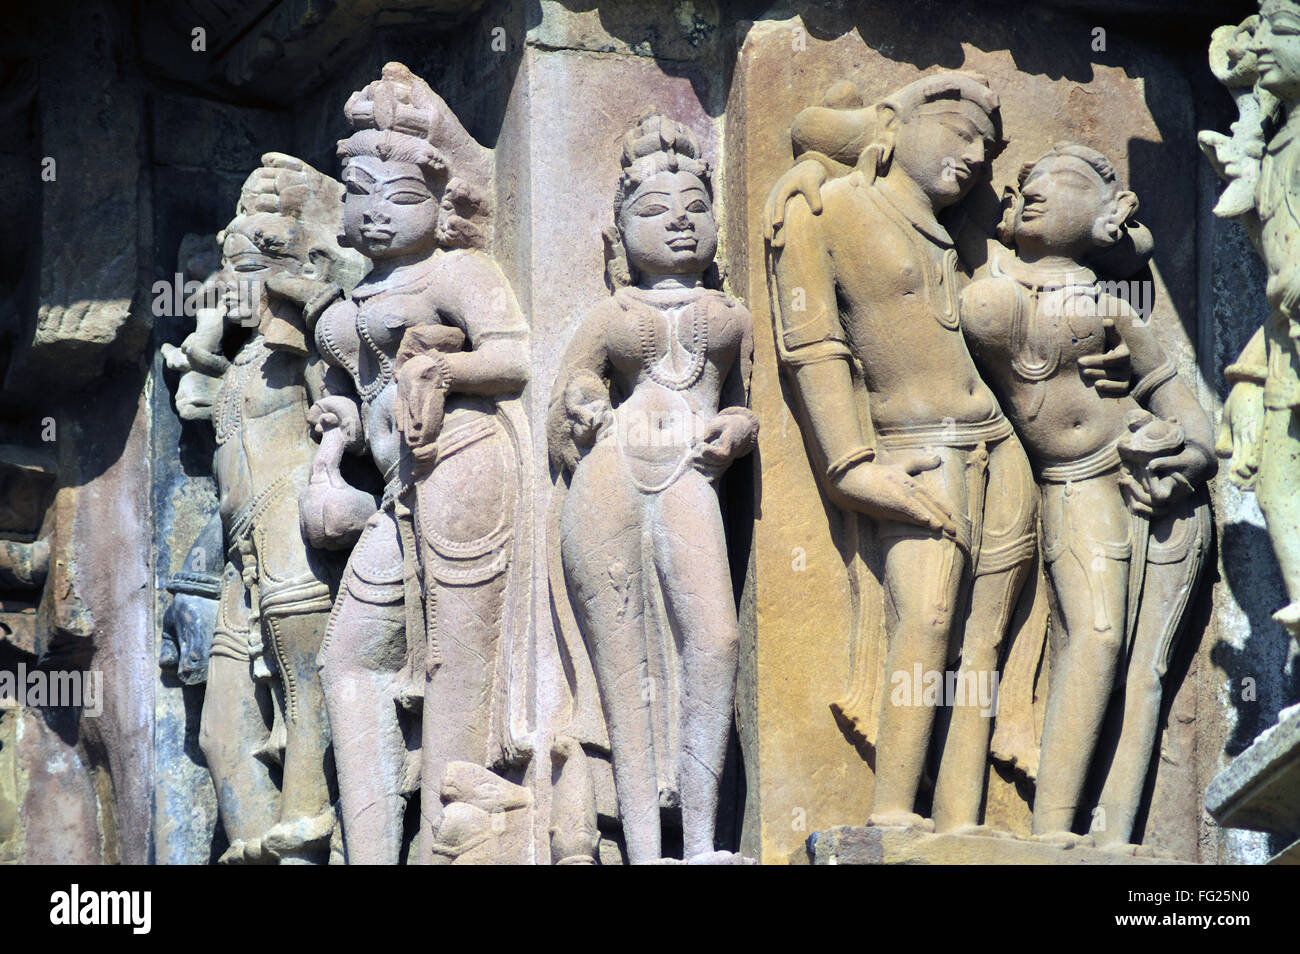 Sculptures sur le mur du temple jagadambi Khajuraho Madhya Pradesh, Inde Banque D'Images